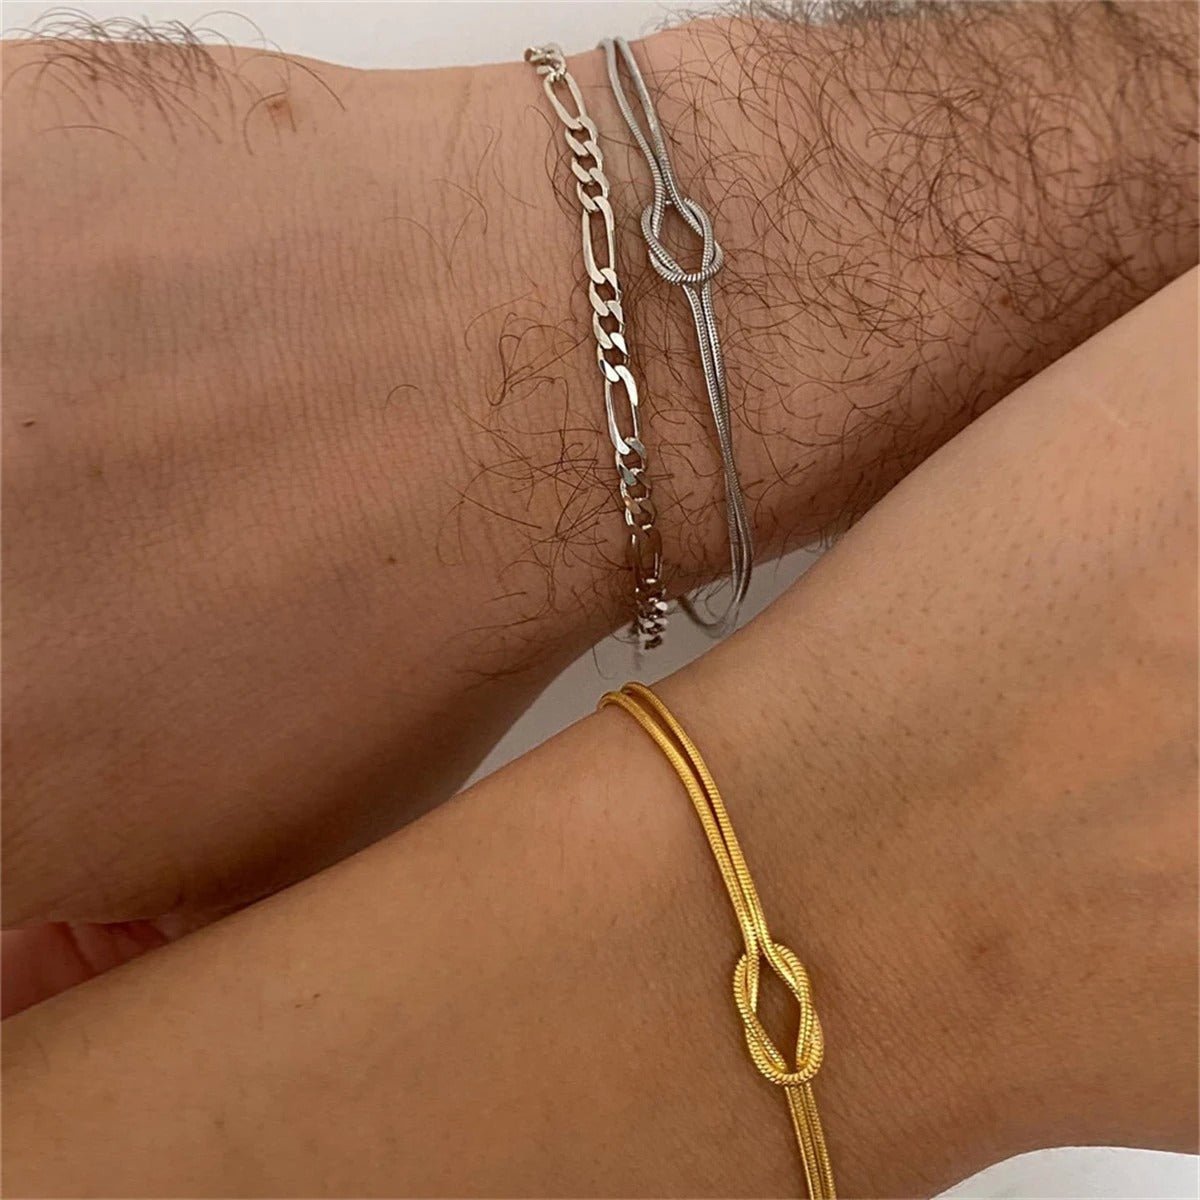 Mother & Son Bond Knot Bracelets - Hidden Forever